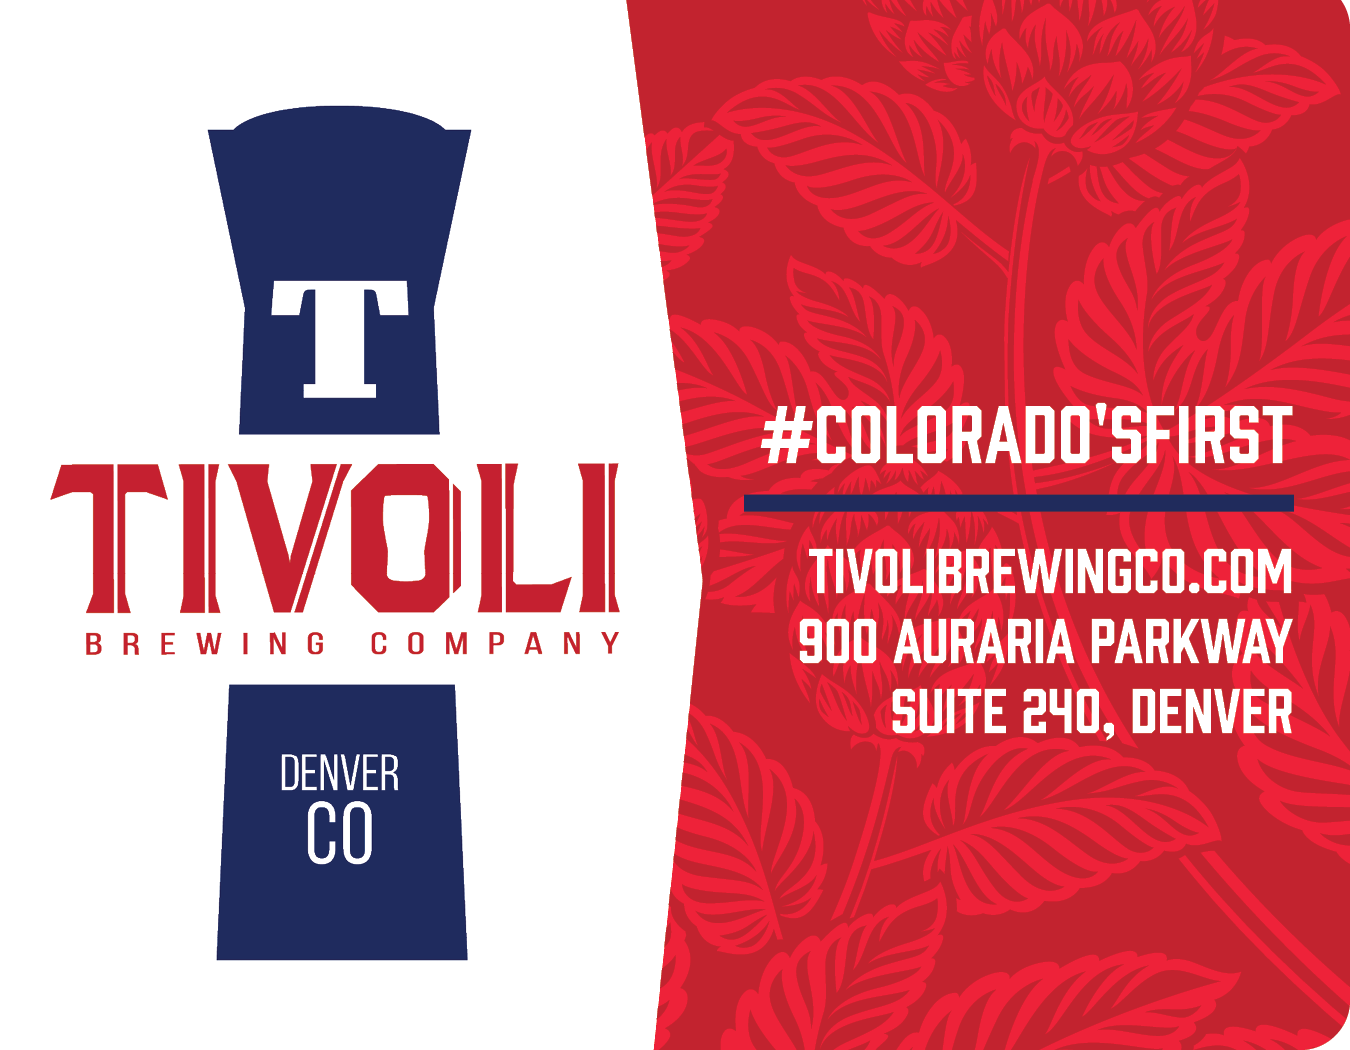 Tivoli Brewing Company